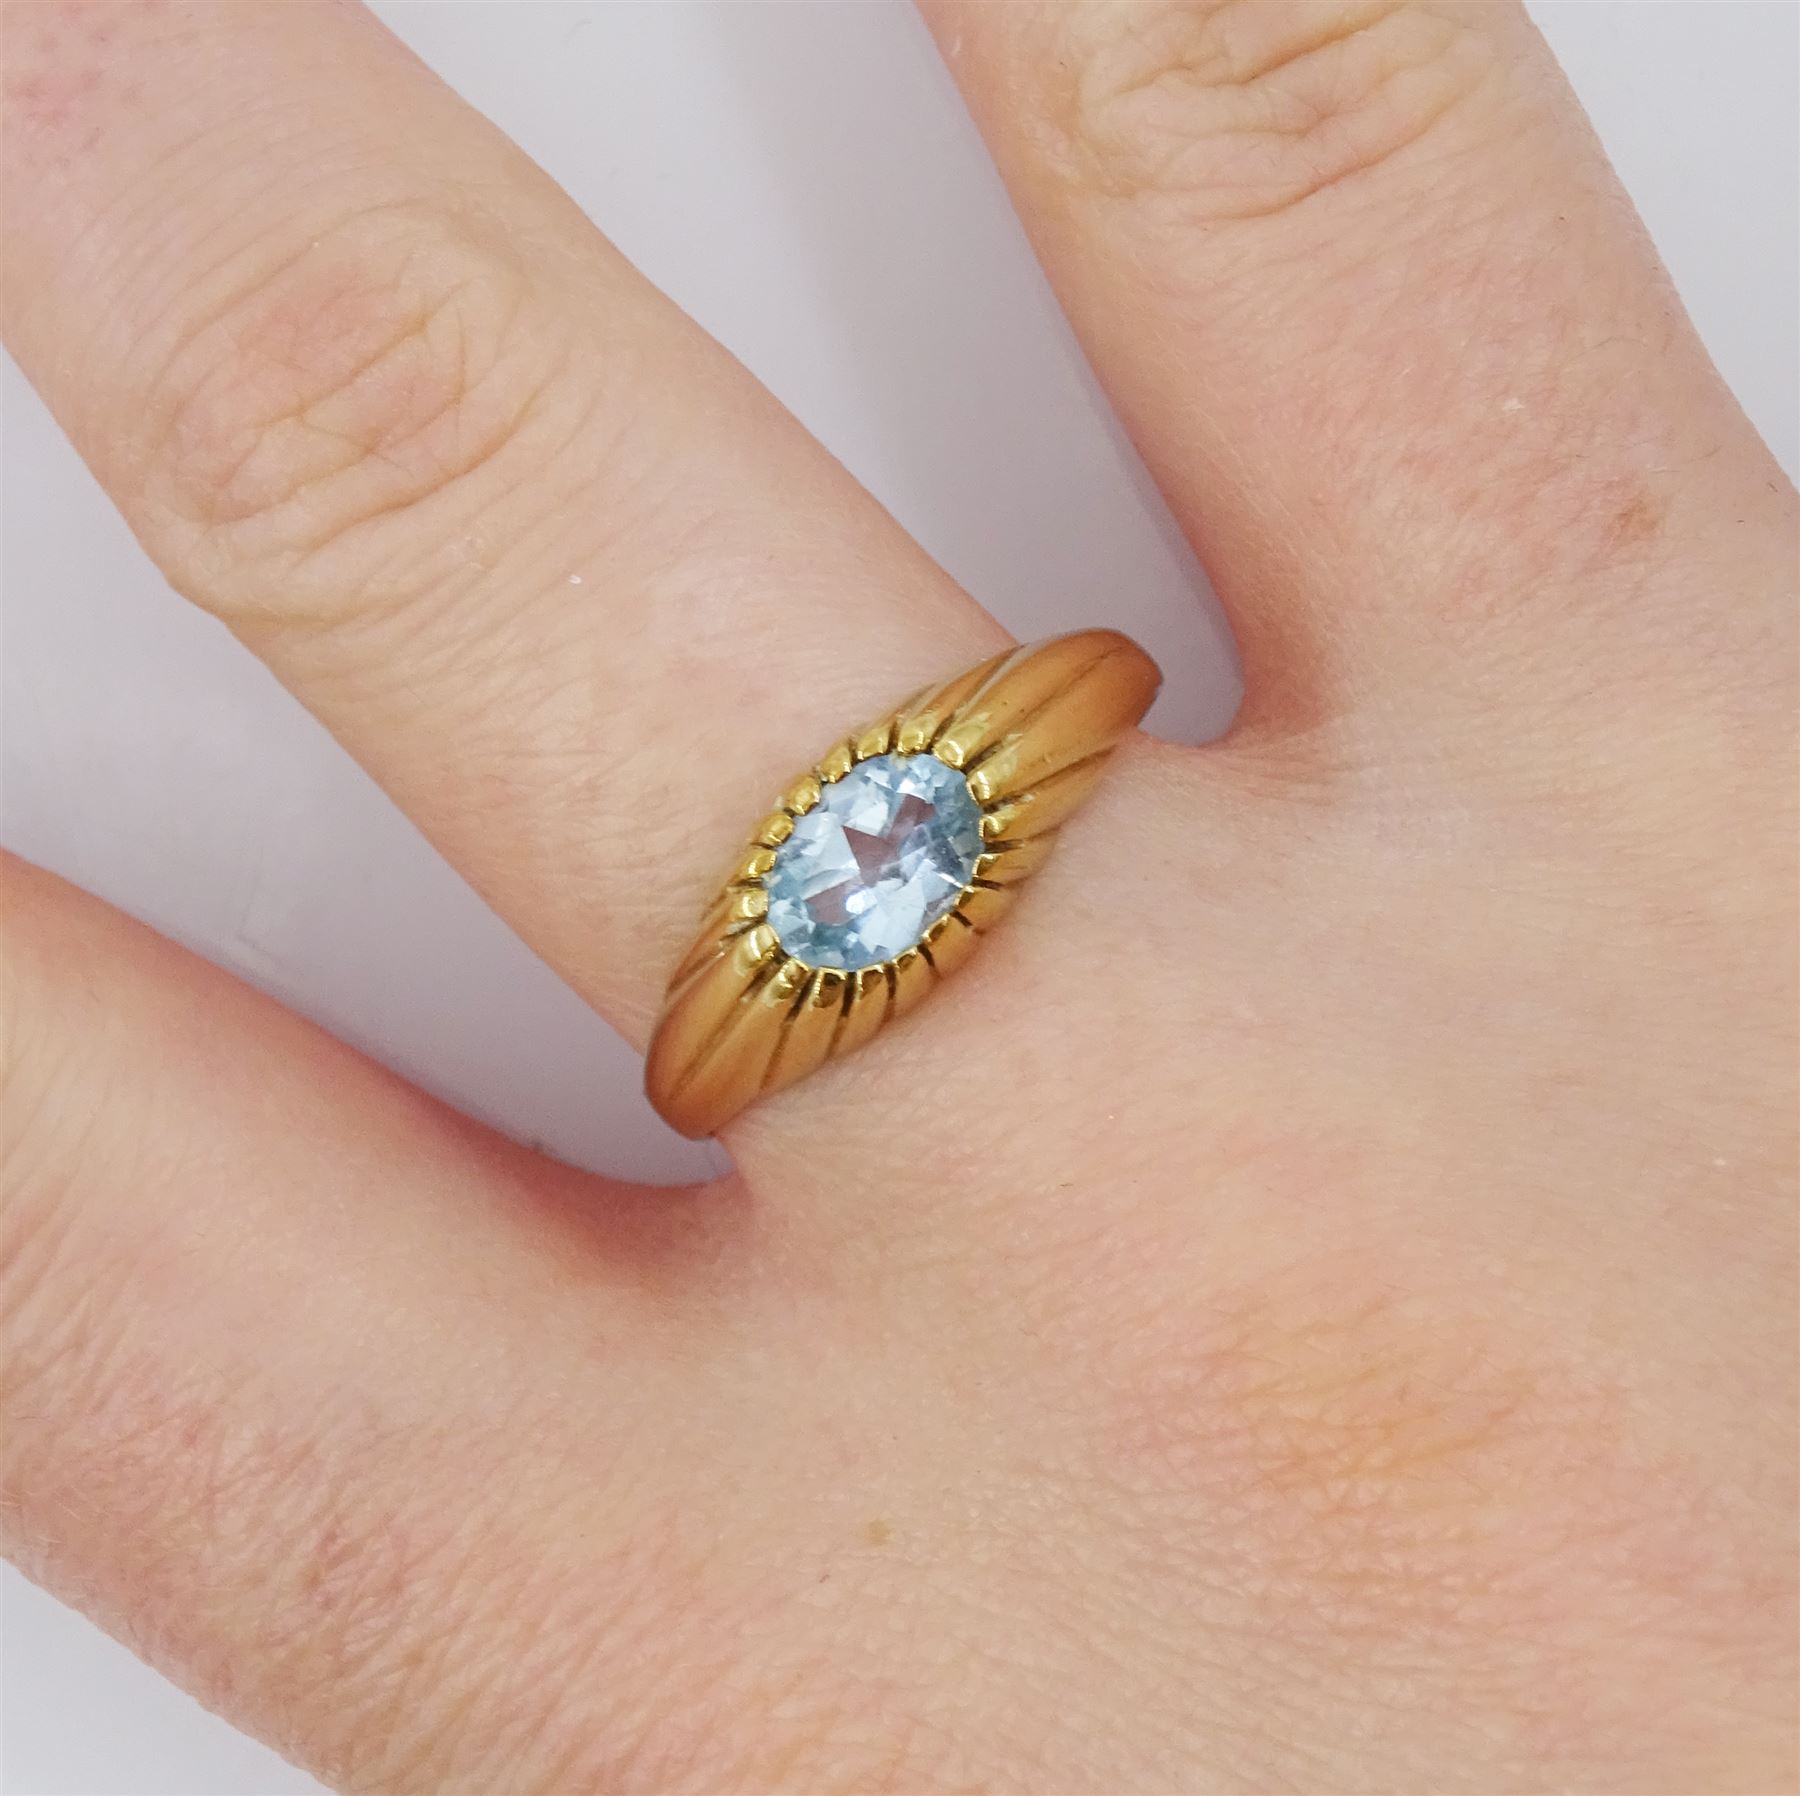 9ct gold single stone oval aquamarine ring - Image 2 of 4